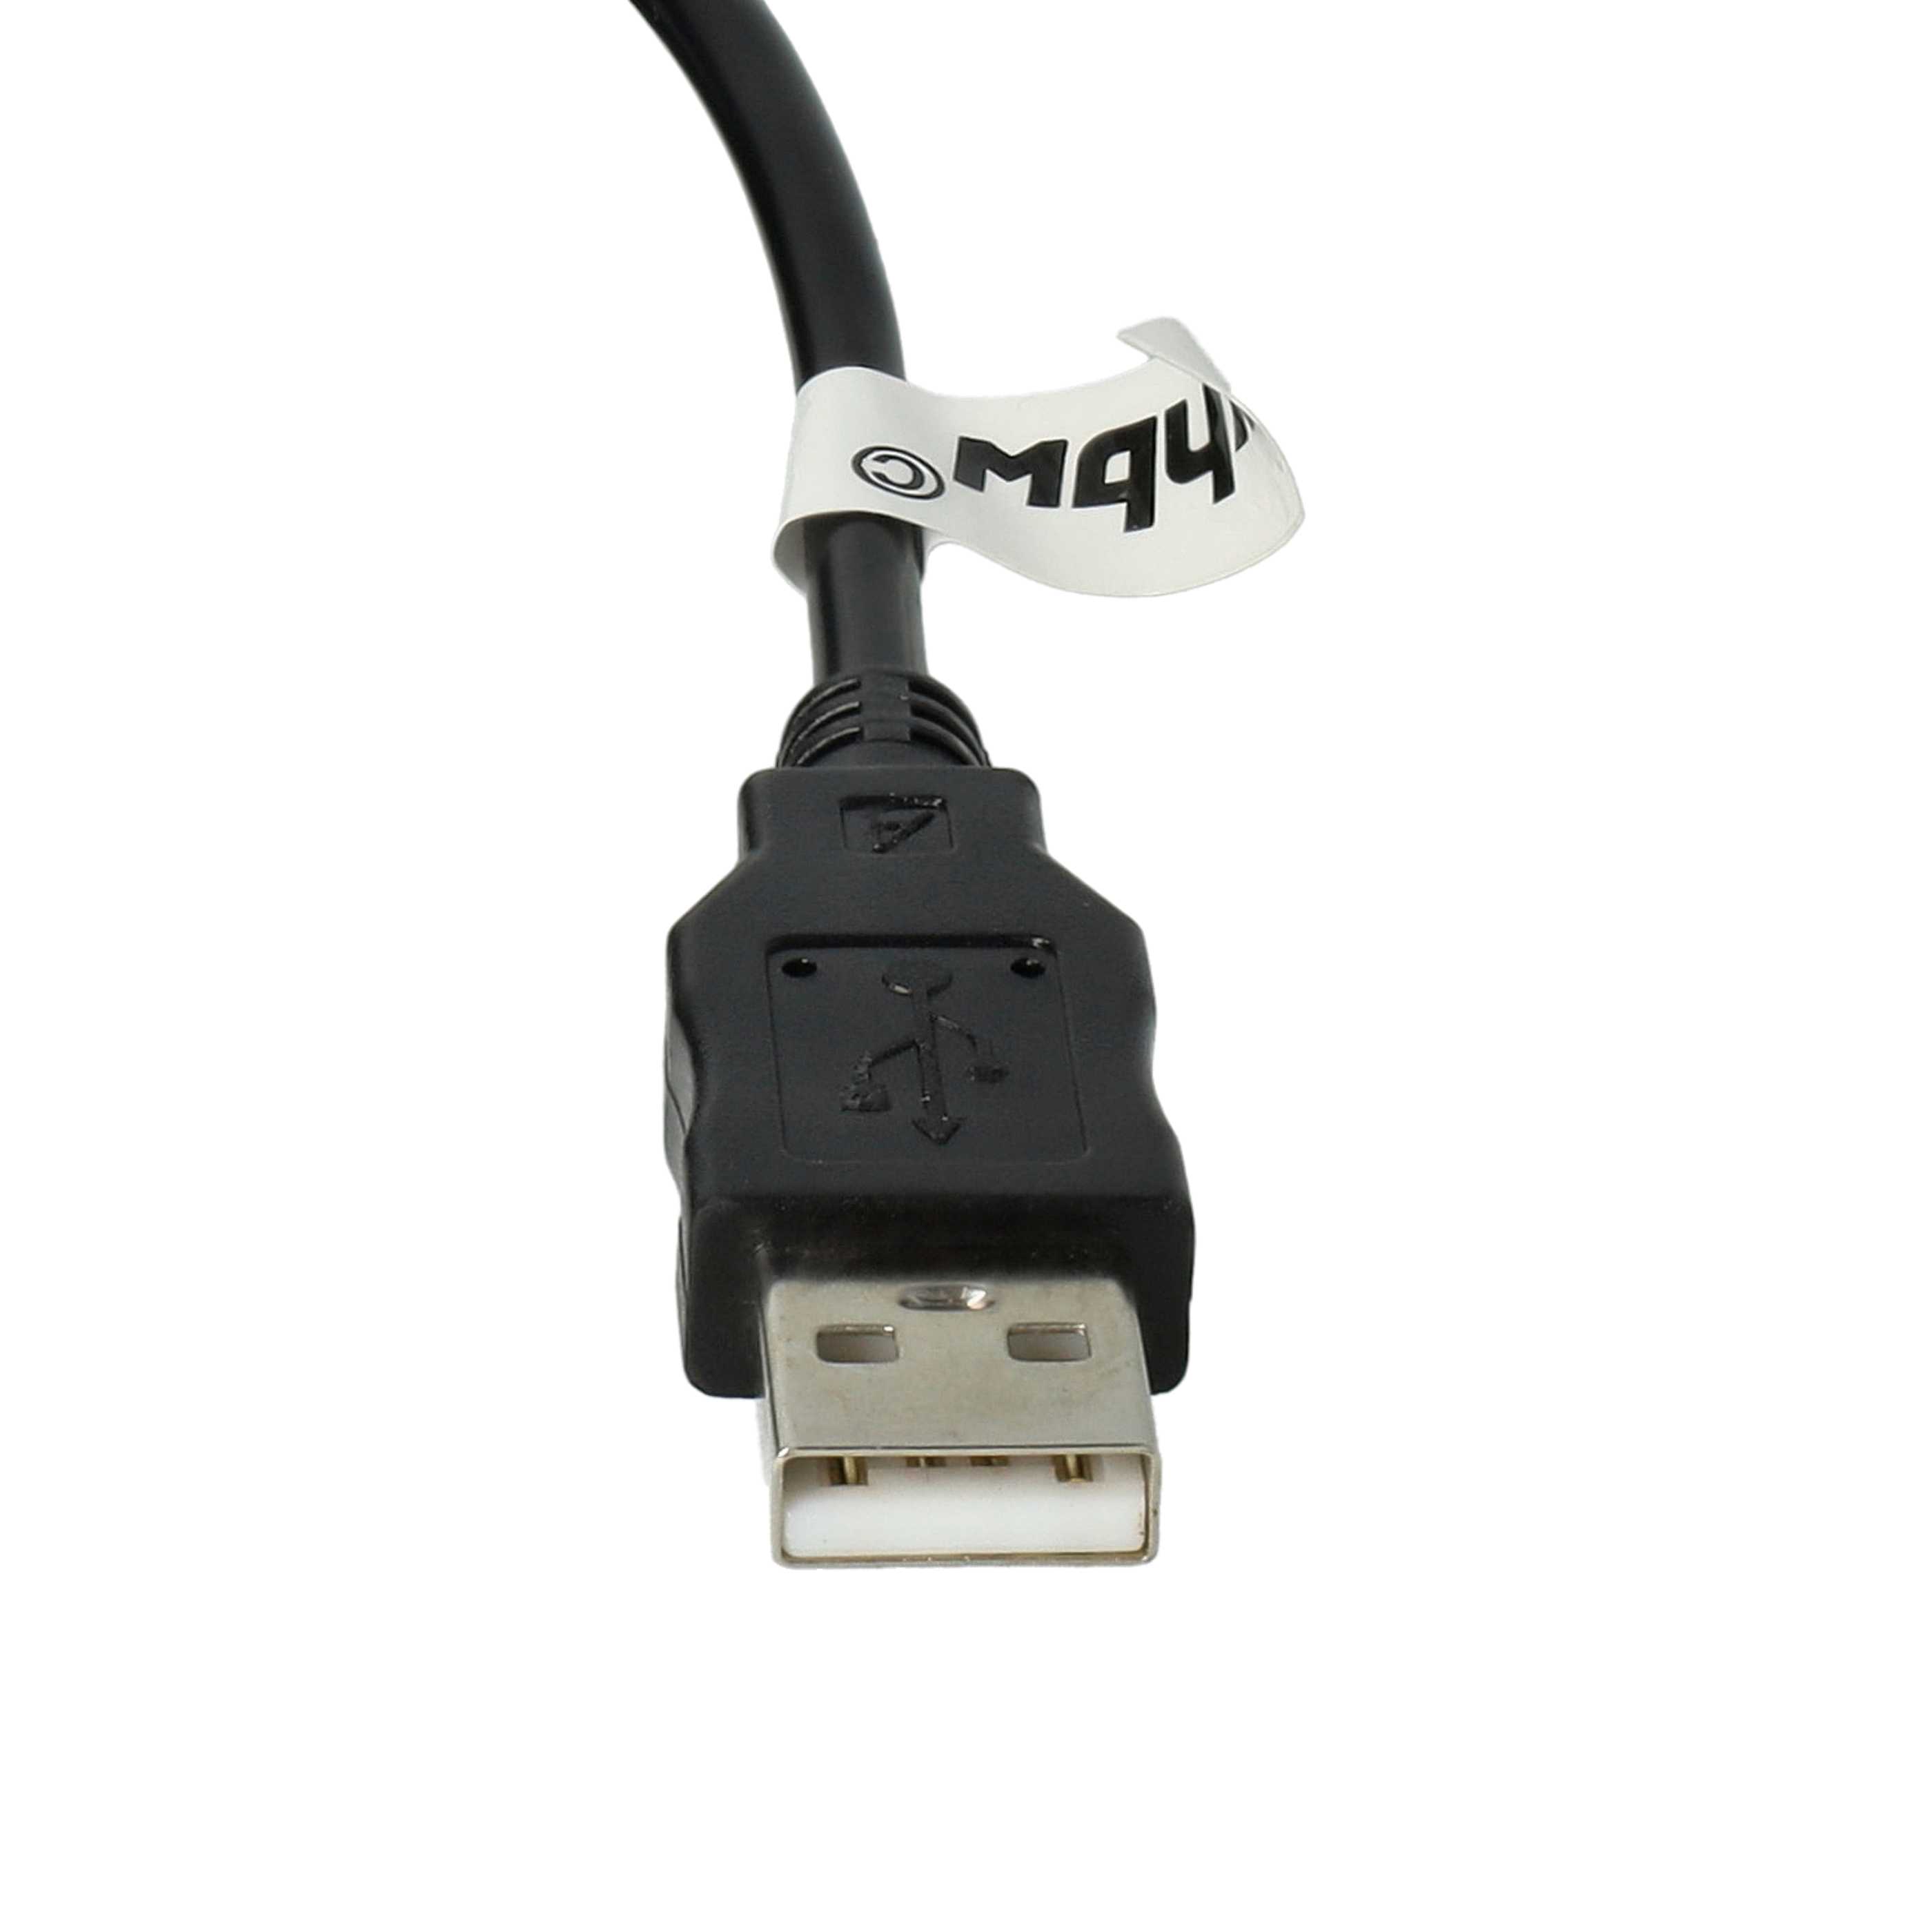 USB Datenkabel als Ersatz für Kodak U-8 für Kamera - 150 cm